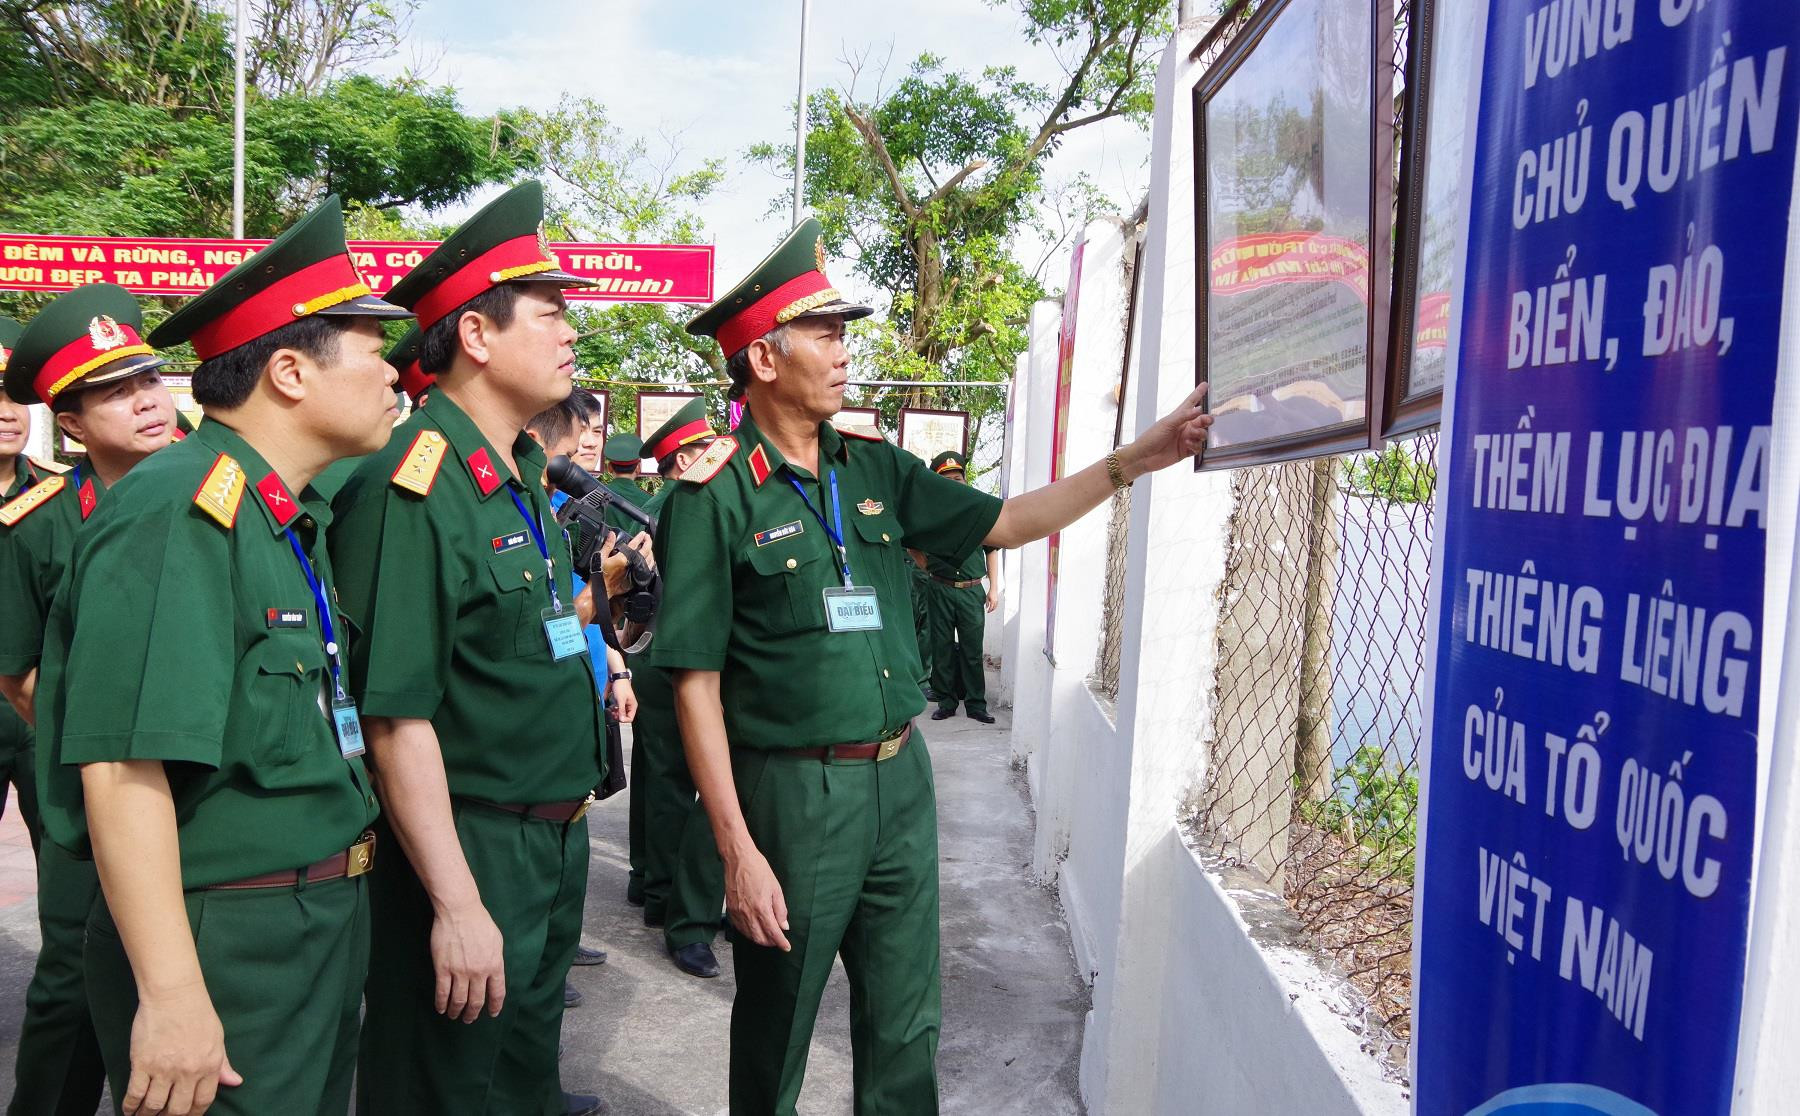 Thủ trưởng Bộ Tư lệnh Quân khu 4 và Bộ CHQS tỉnh Nghệ An xem Triển lãm bản đồ và tư liệu Hoàng Sa, Trường Sa của Việt Nam trên khuôn viên đảo Mắt. Ảnh: Thu Giang